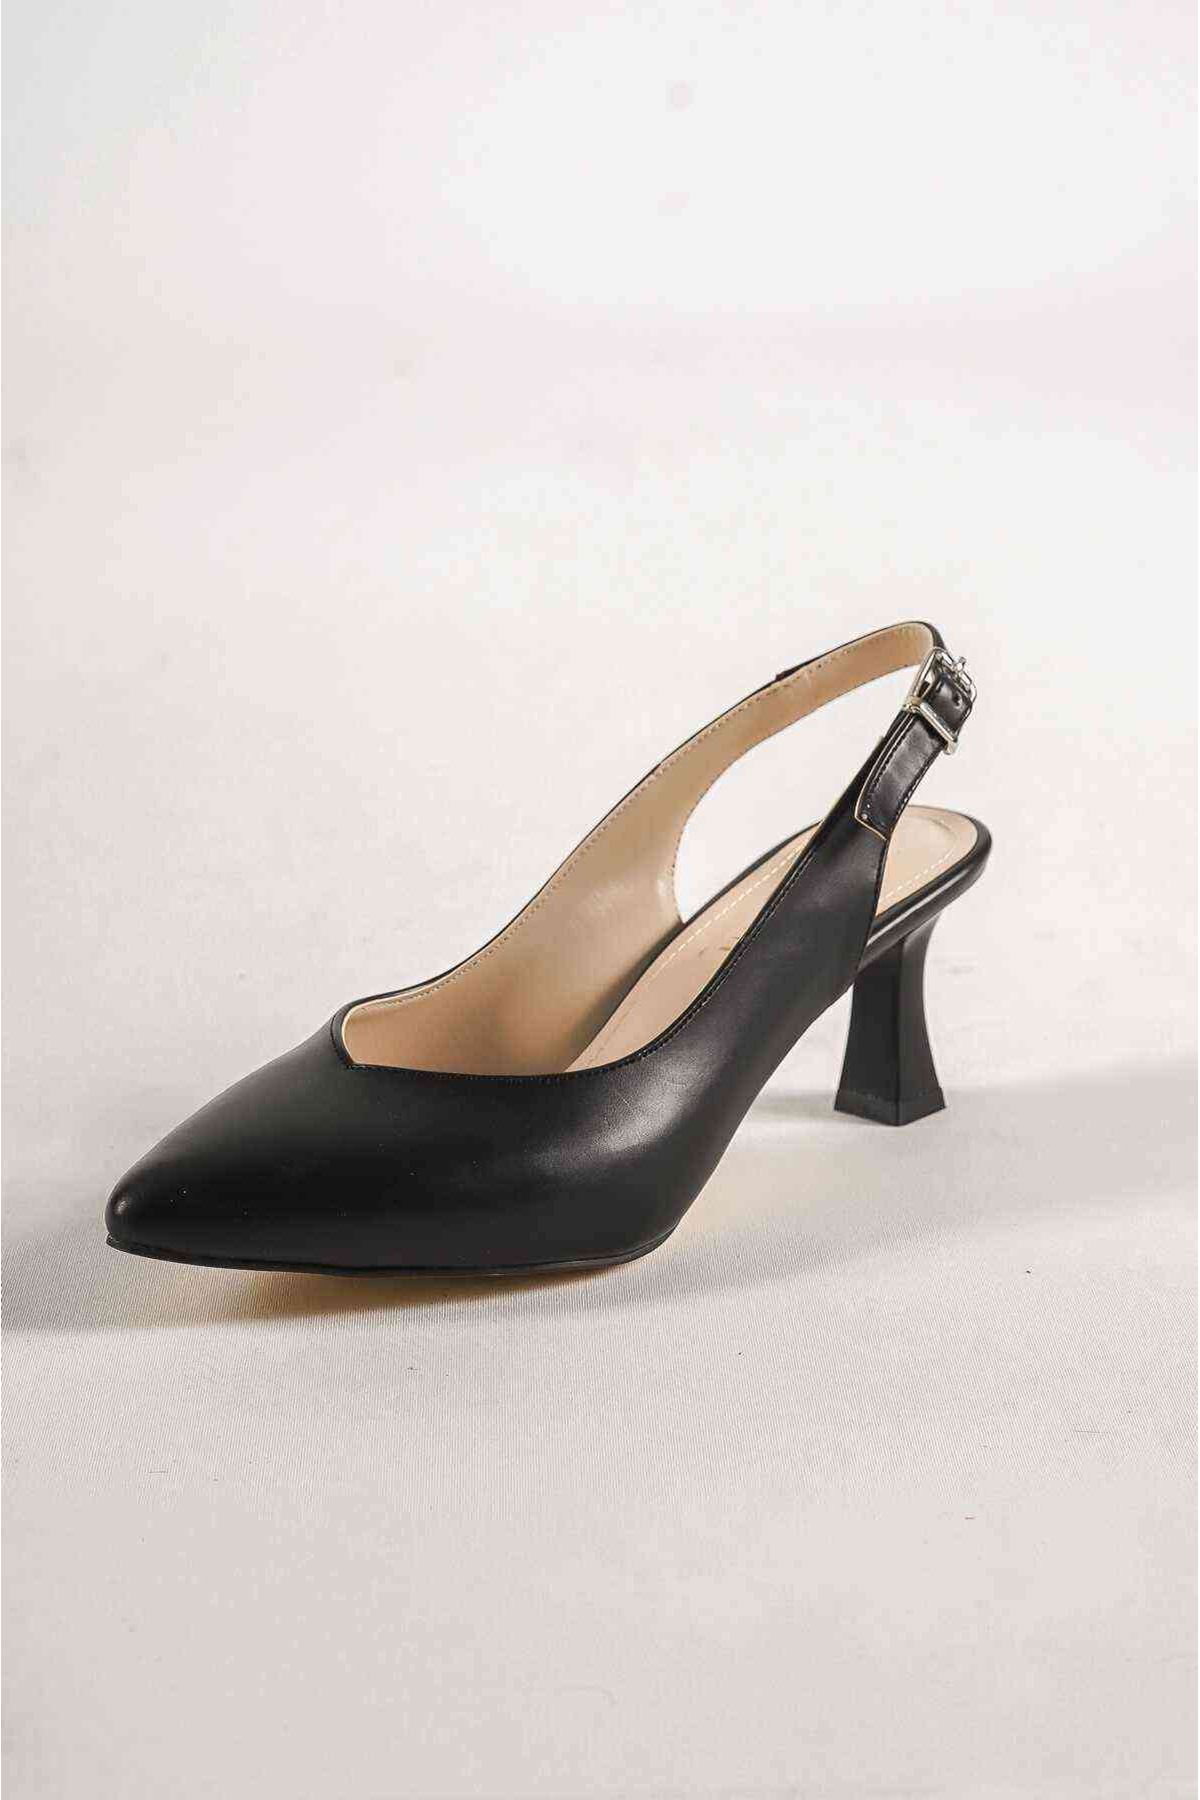 Kadın Topuklu Ayakkabı TR055Y05A